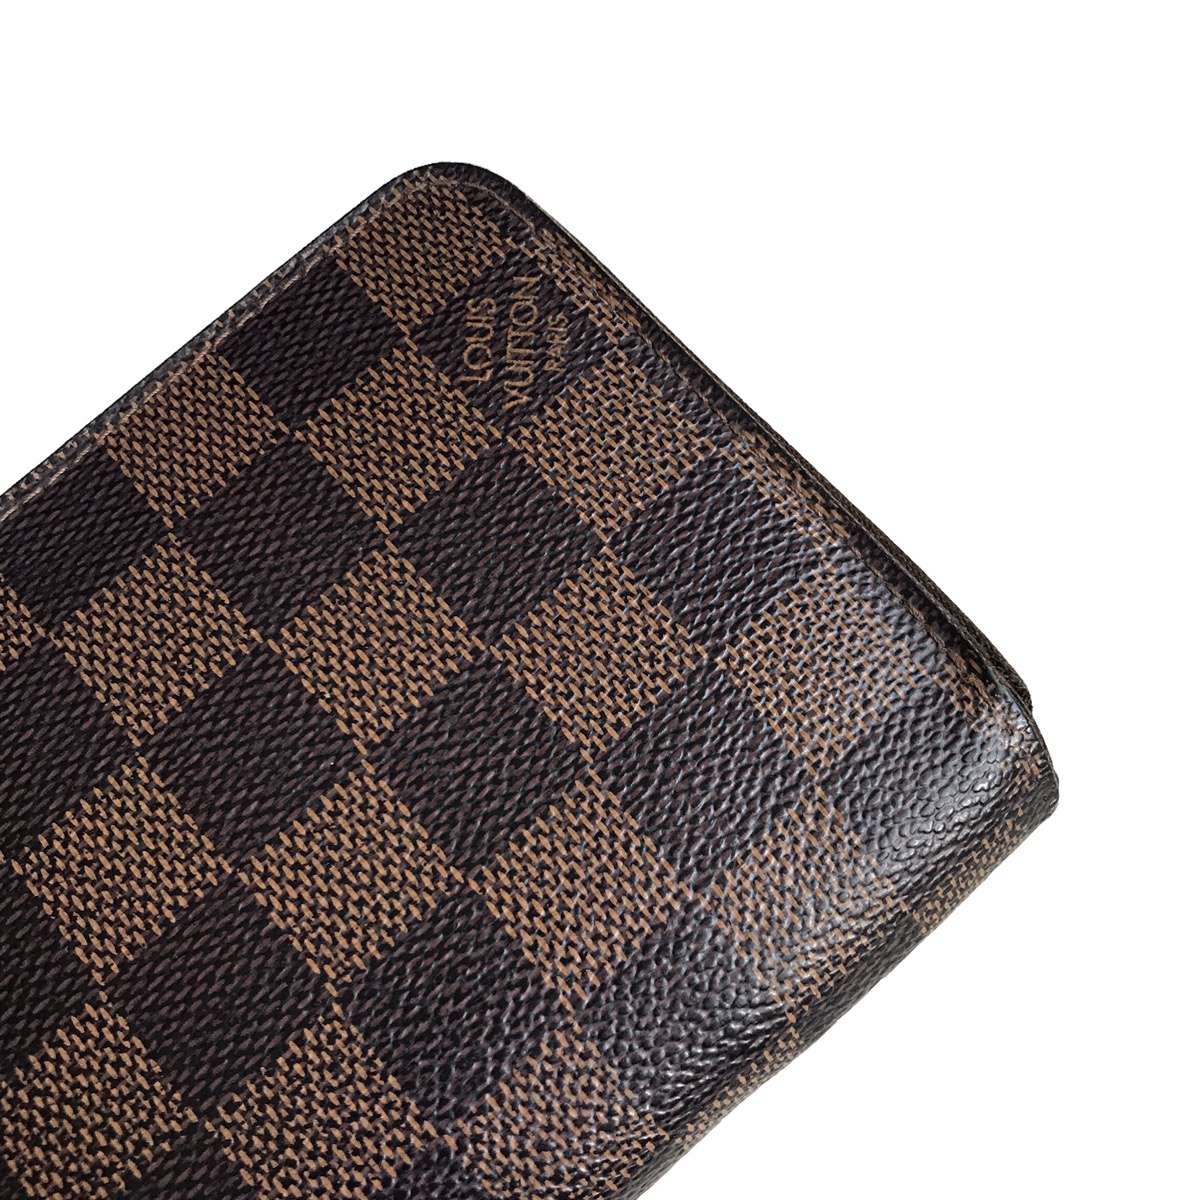 Louis Vuitton 8 Credit Card Insert Beige Empreinte Leather wallet